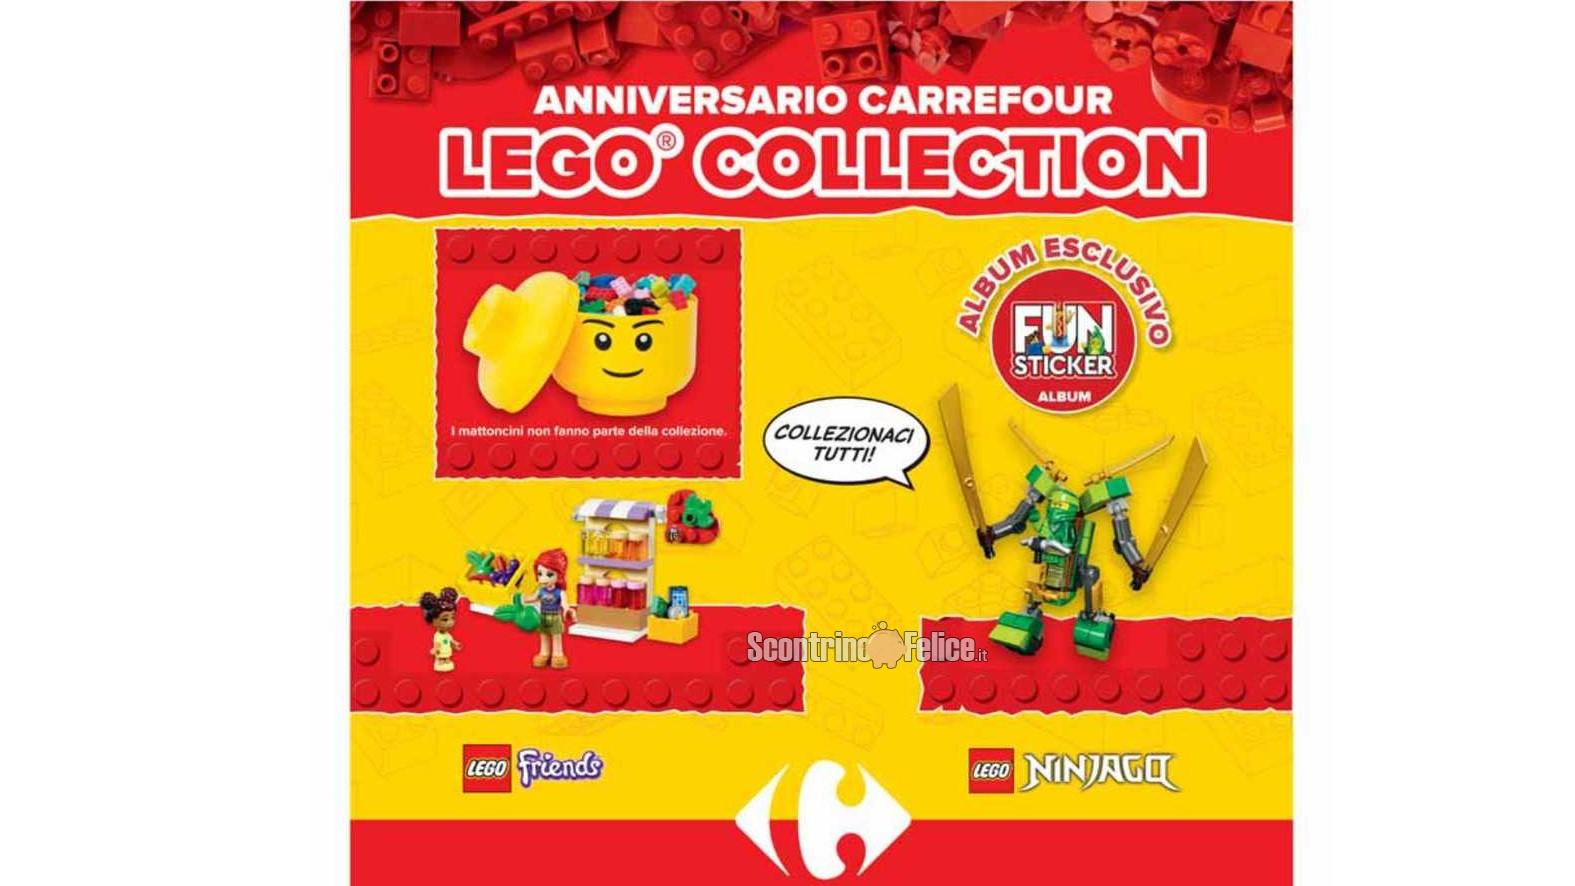 Carrefour Lego Collection: raccogli i bollini e richiedi premi Lego!